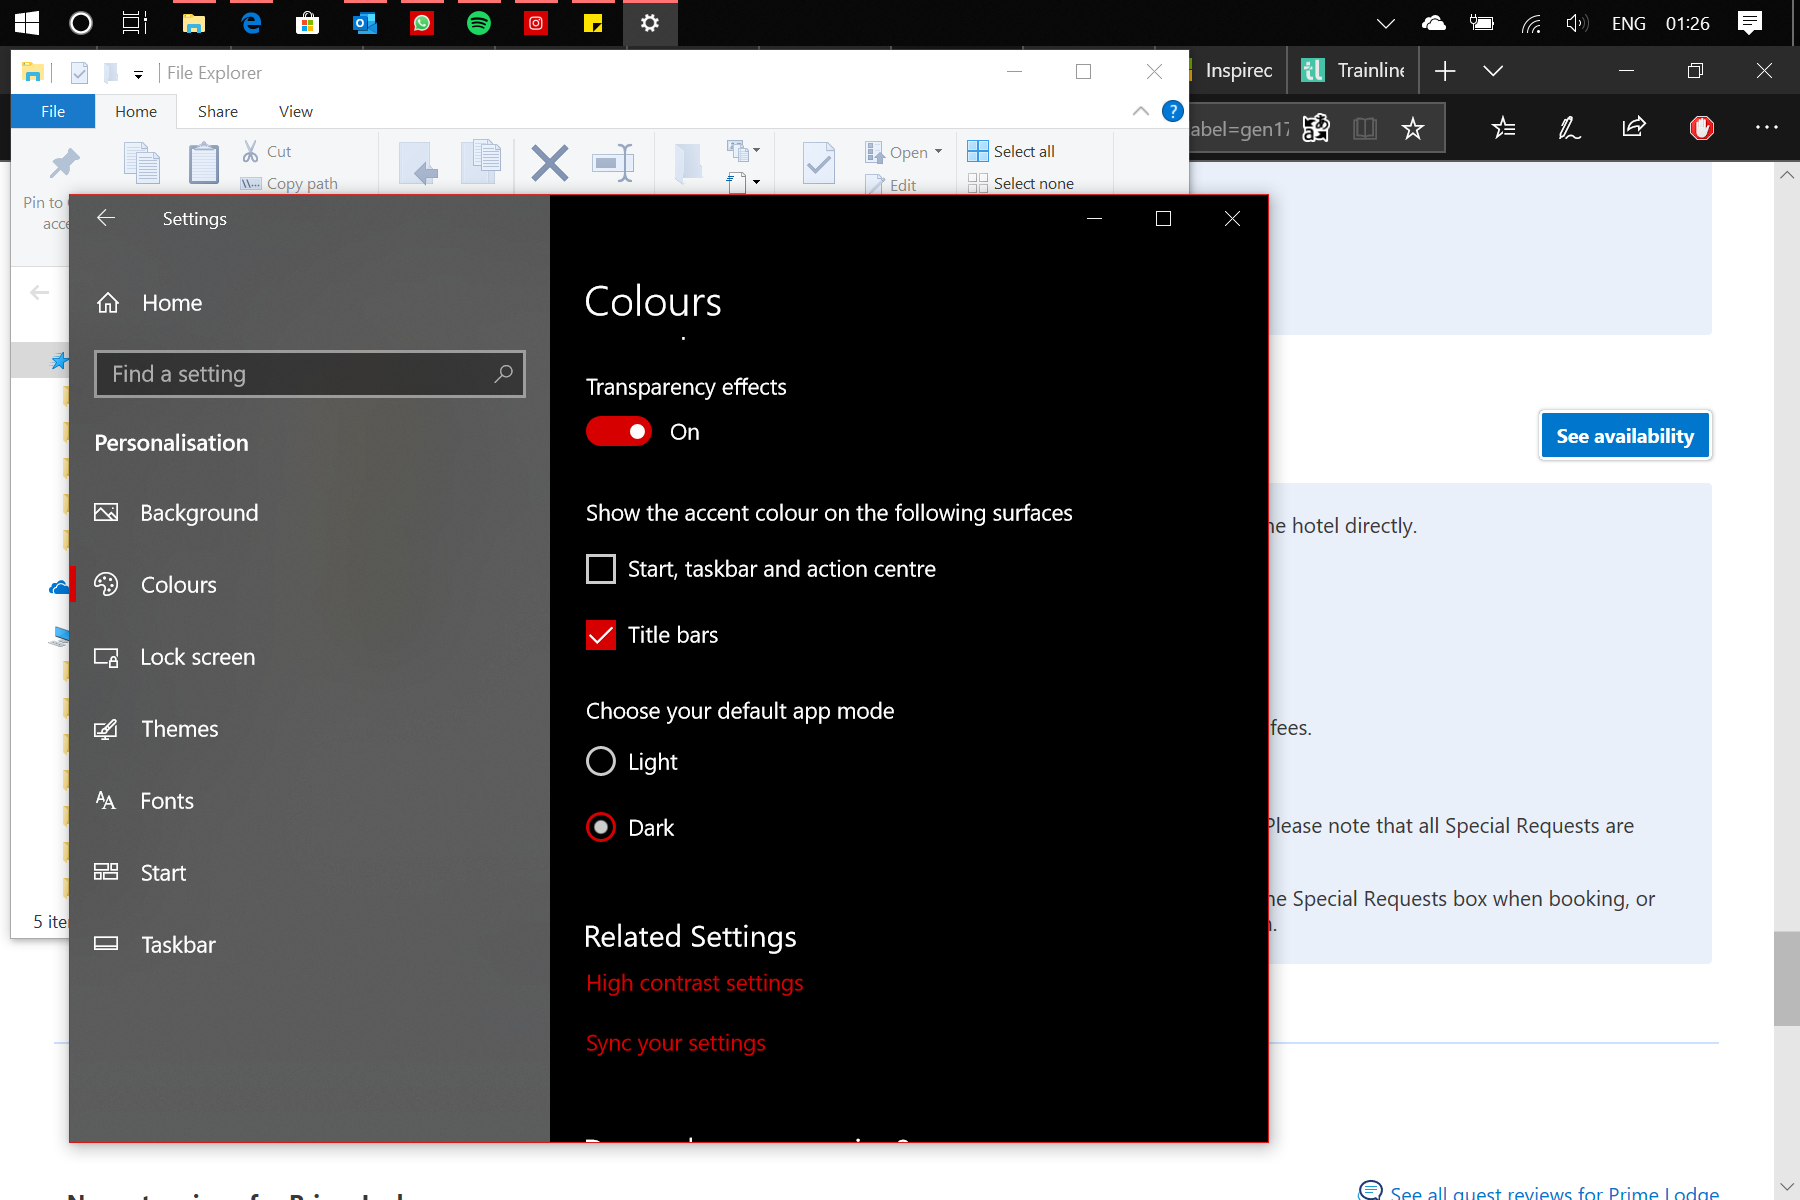 Windows 10S Dark Mode on Surface Go 27b30346-44b6-4b60-bc7c-a5a92b49f1a0?upload=true.png